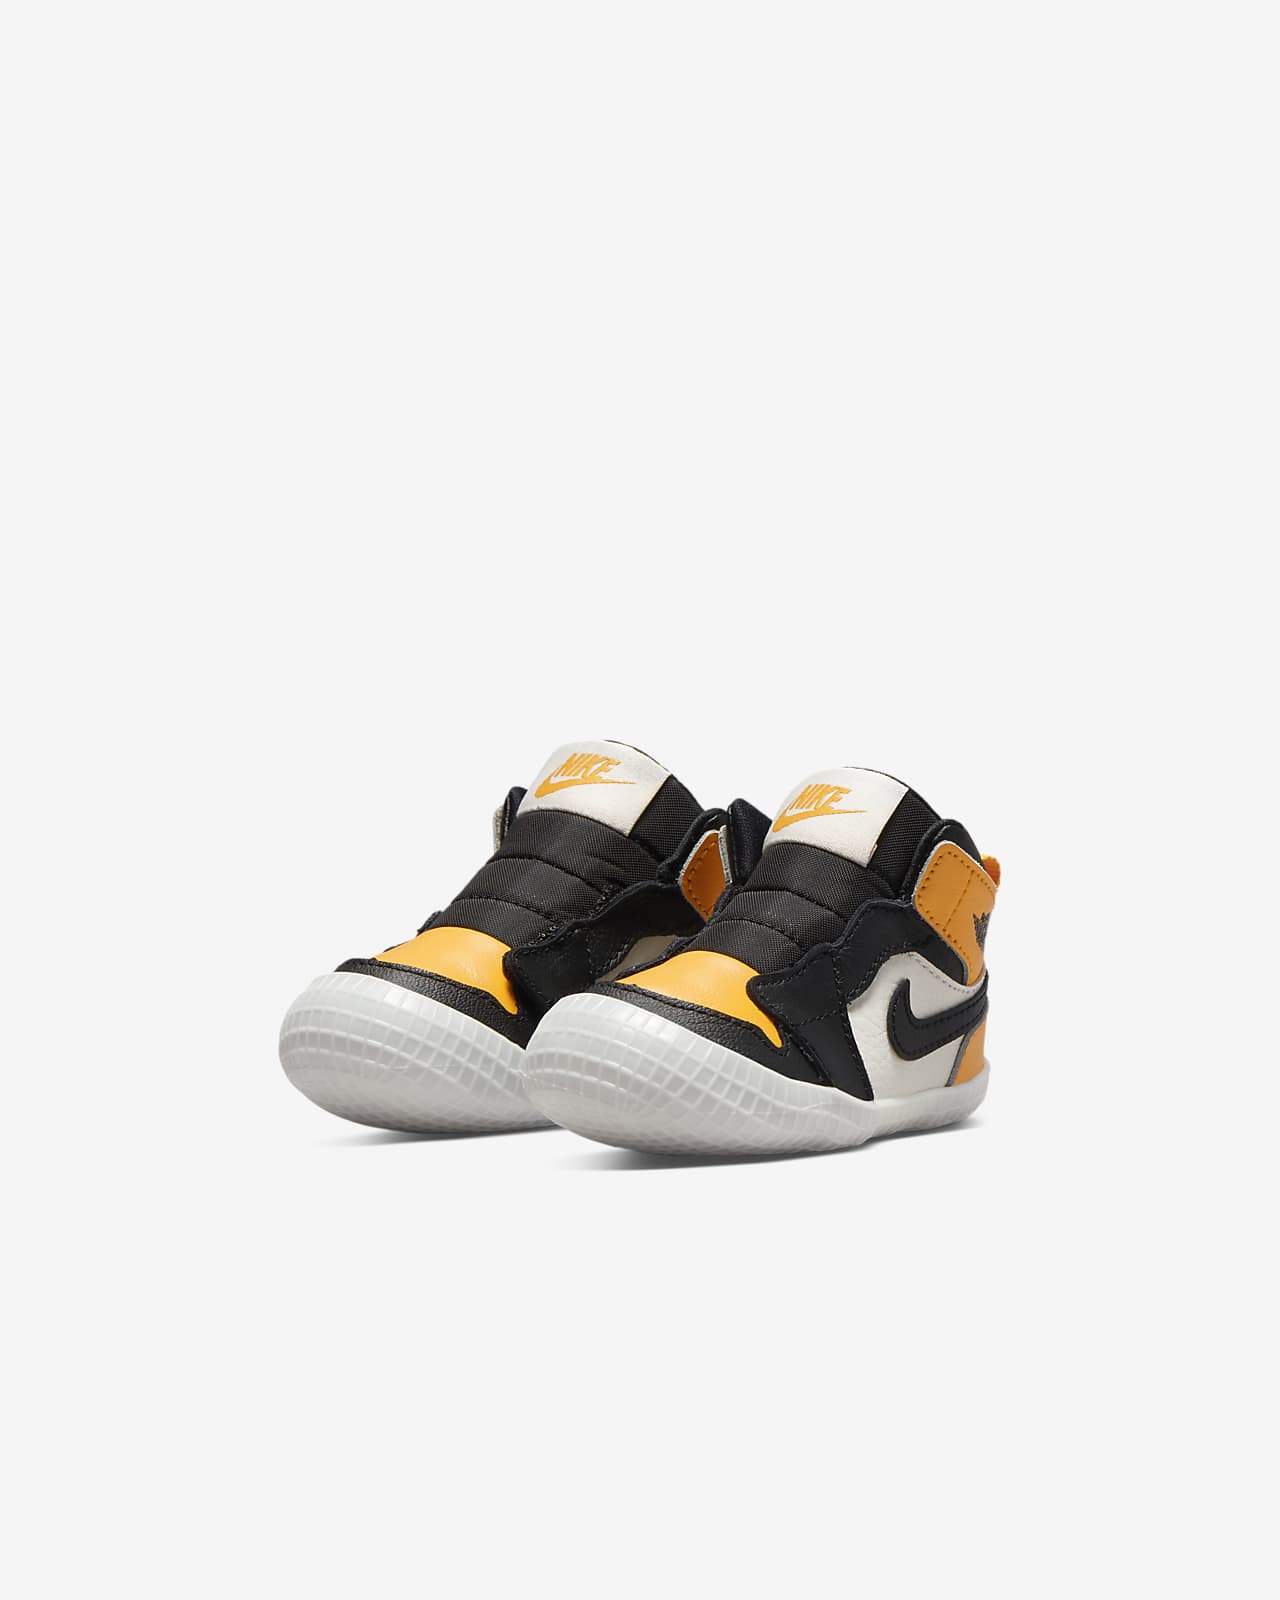 Jordan 1 Baby Cot Bootie. Nike AU